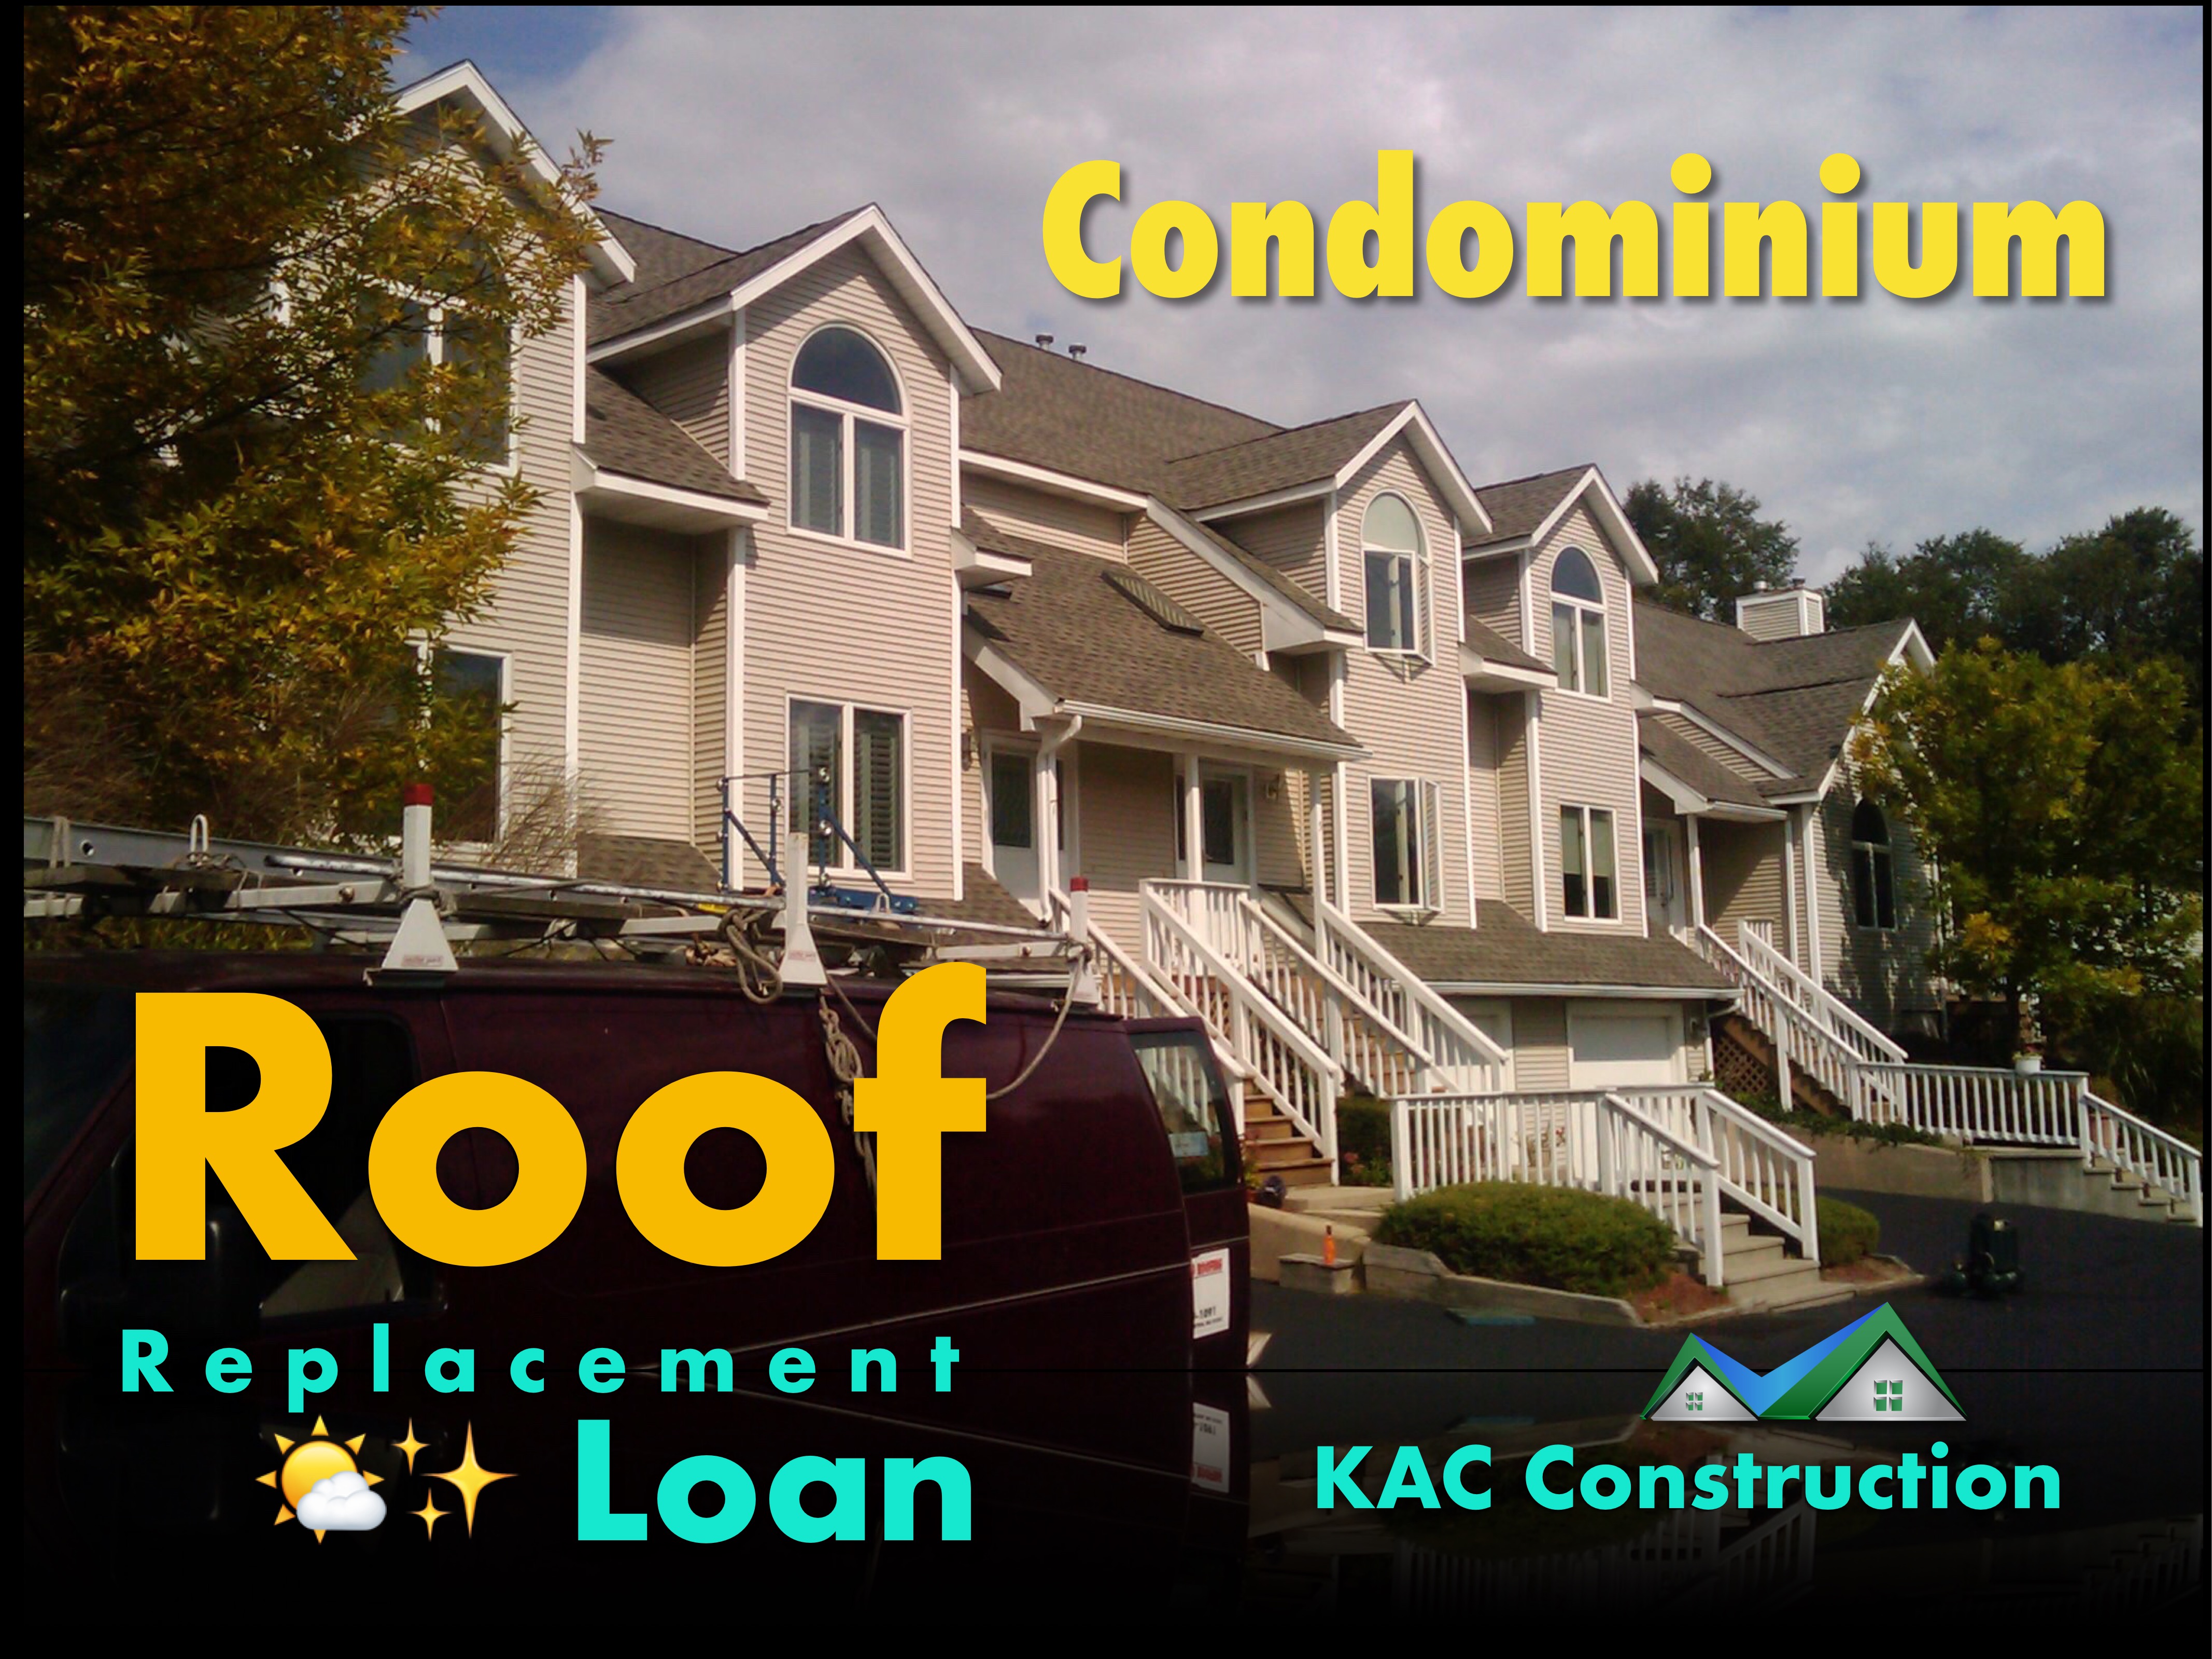 Finance roof, finance roof ri, finance roof replacement, finance roof replacement ri, roof replacement finance, roof replacement finance ri